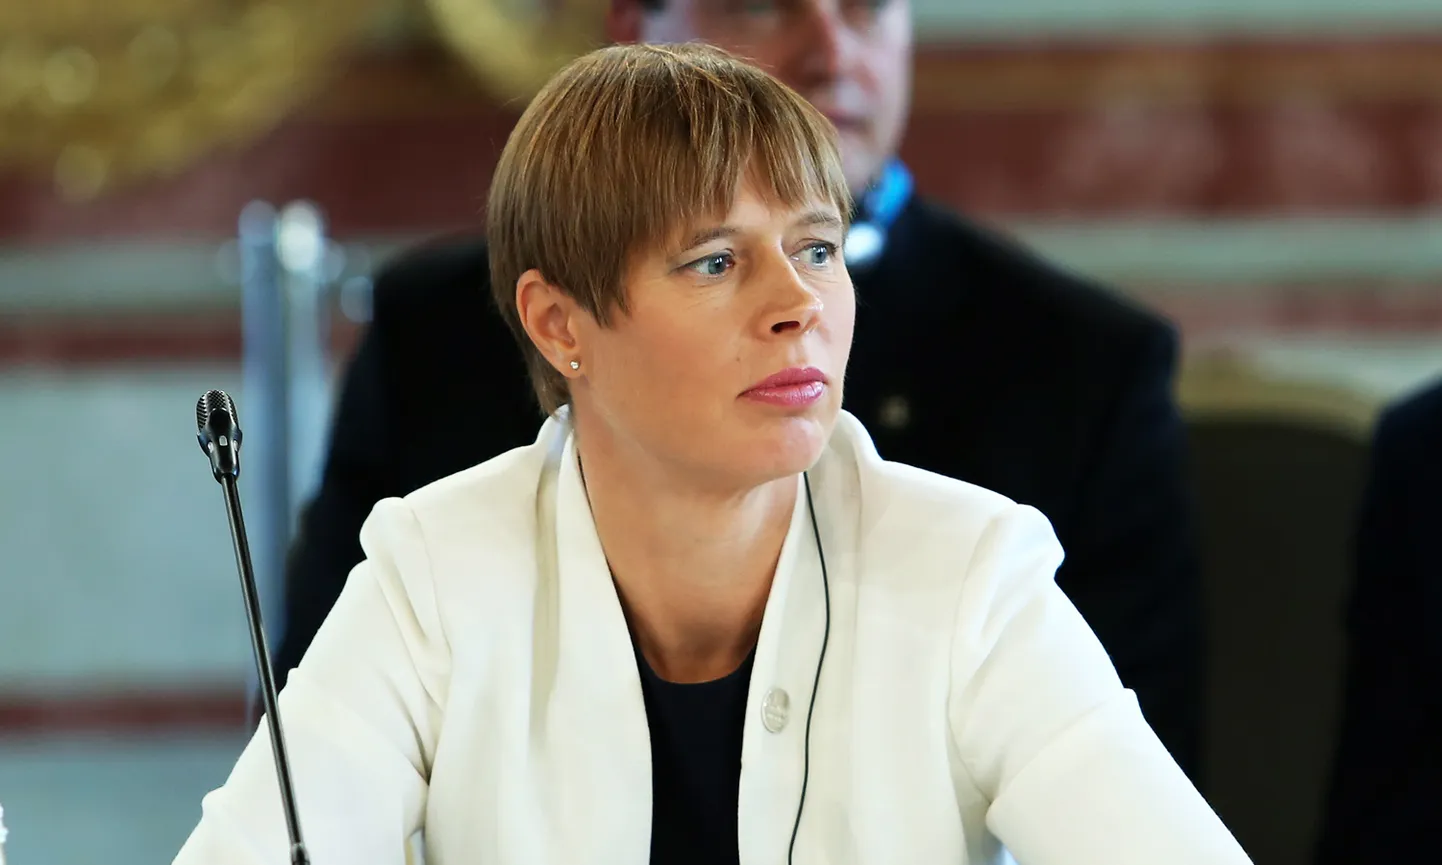 Igaunijas prezidente Kersti Kaljulaida